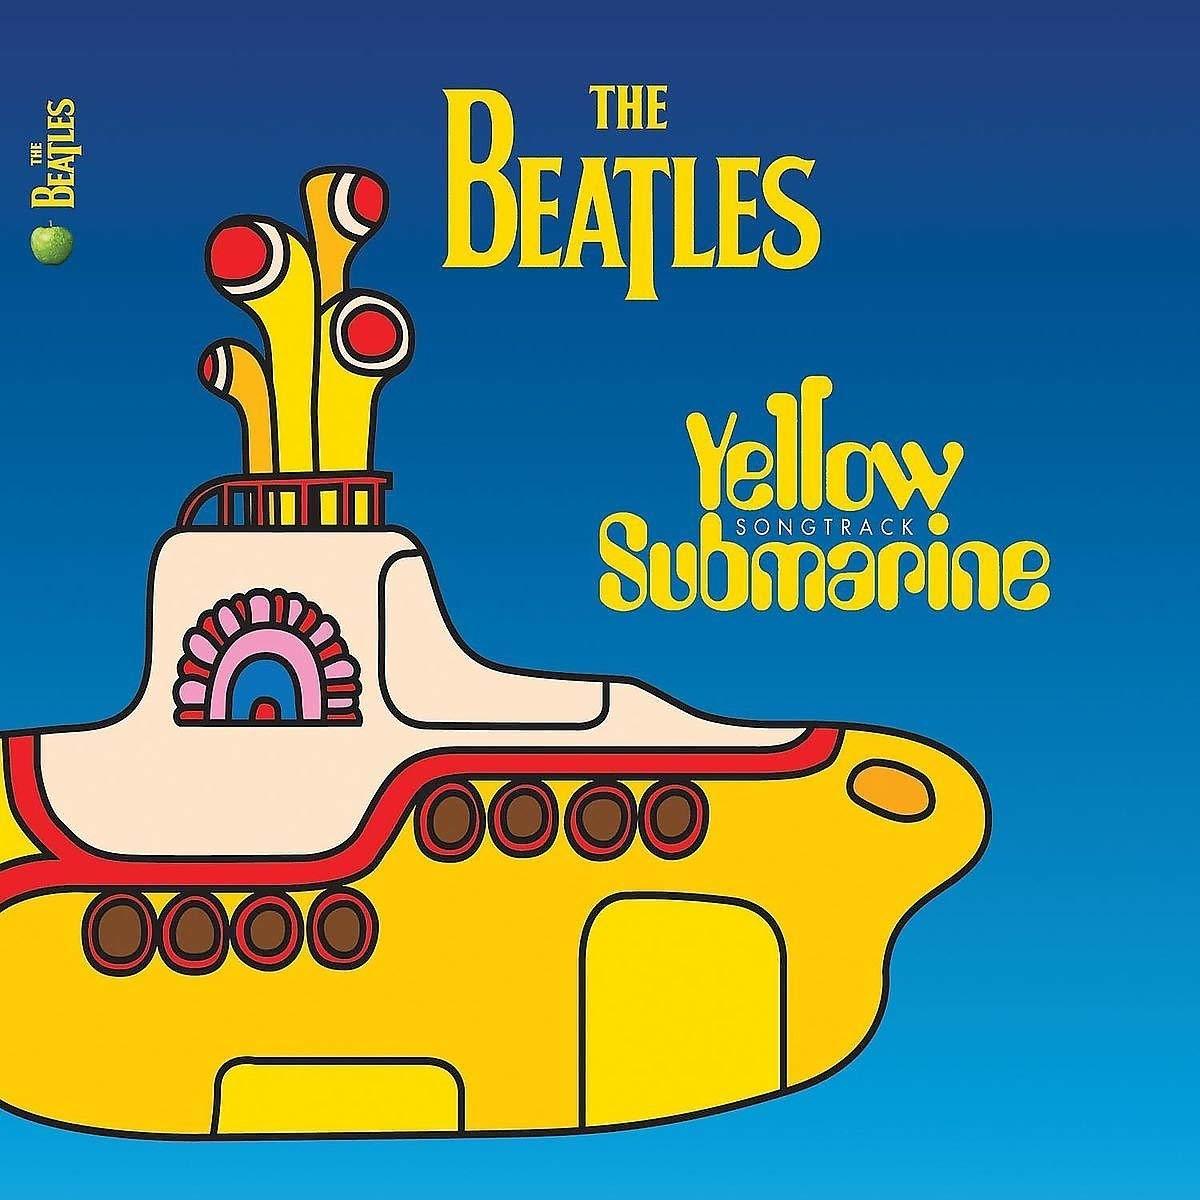 Auction Id X The Beatles ビートルズ Yellow Submarine ソングトラック イエローサブマリン 中古cd アルバム Kaiguys Yahoo Auctions Japan English Proxy Bidding Service